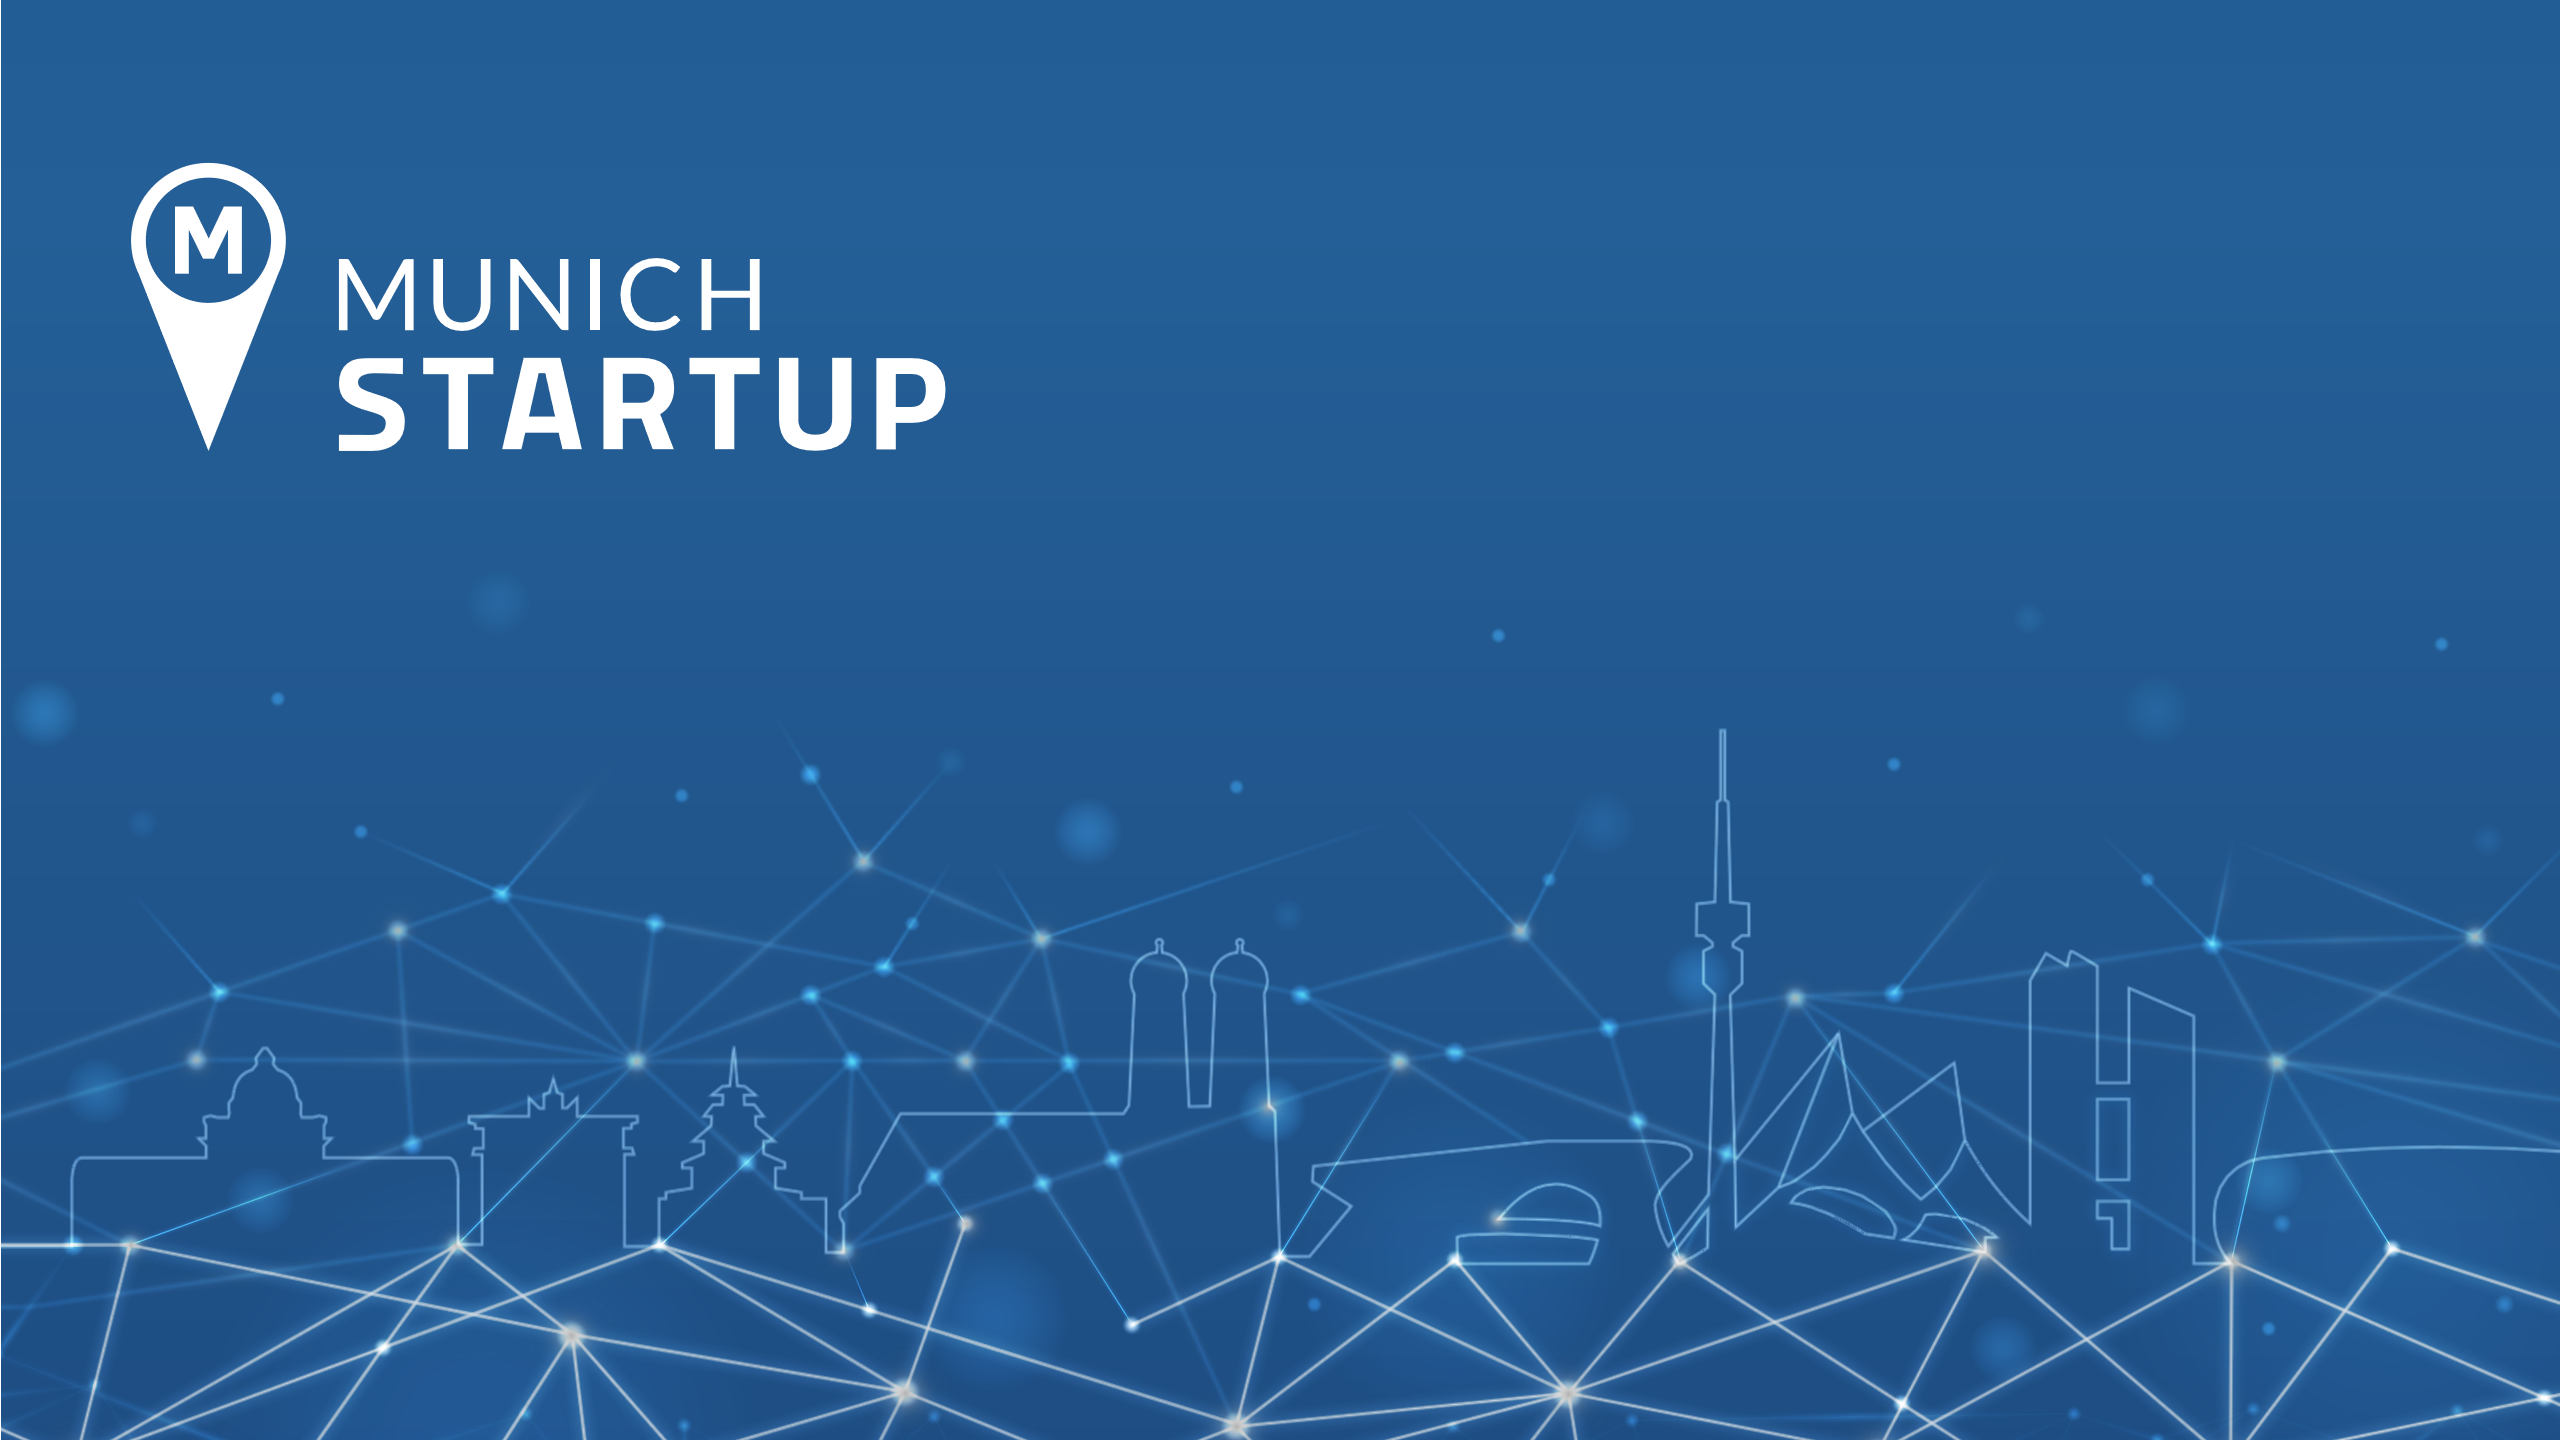 (c) Munich-startup.de